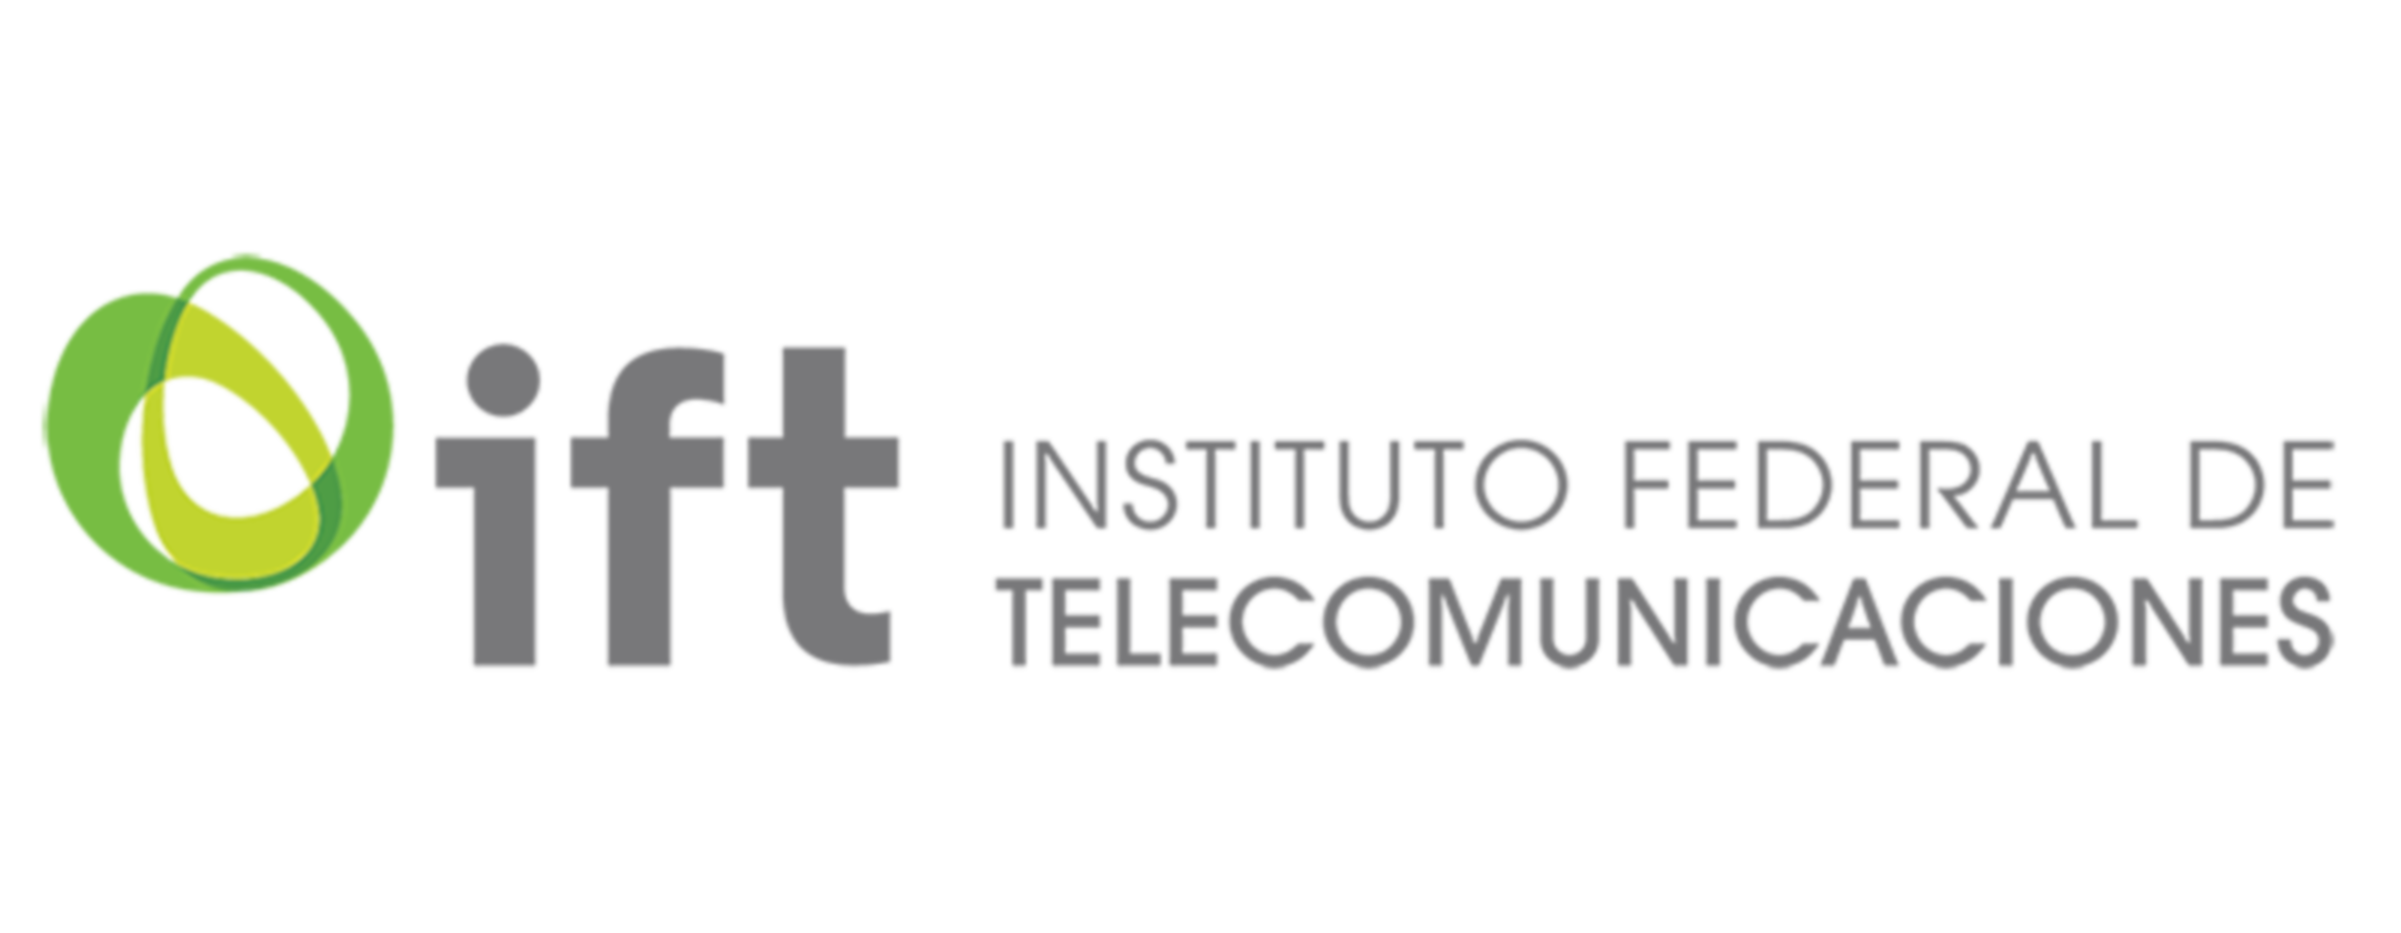 Logo del Instituto Federal de Telecomunicaciones (I F T)